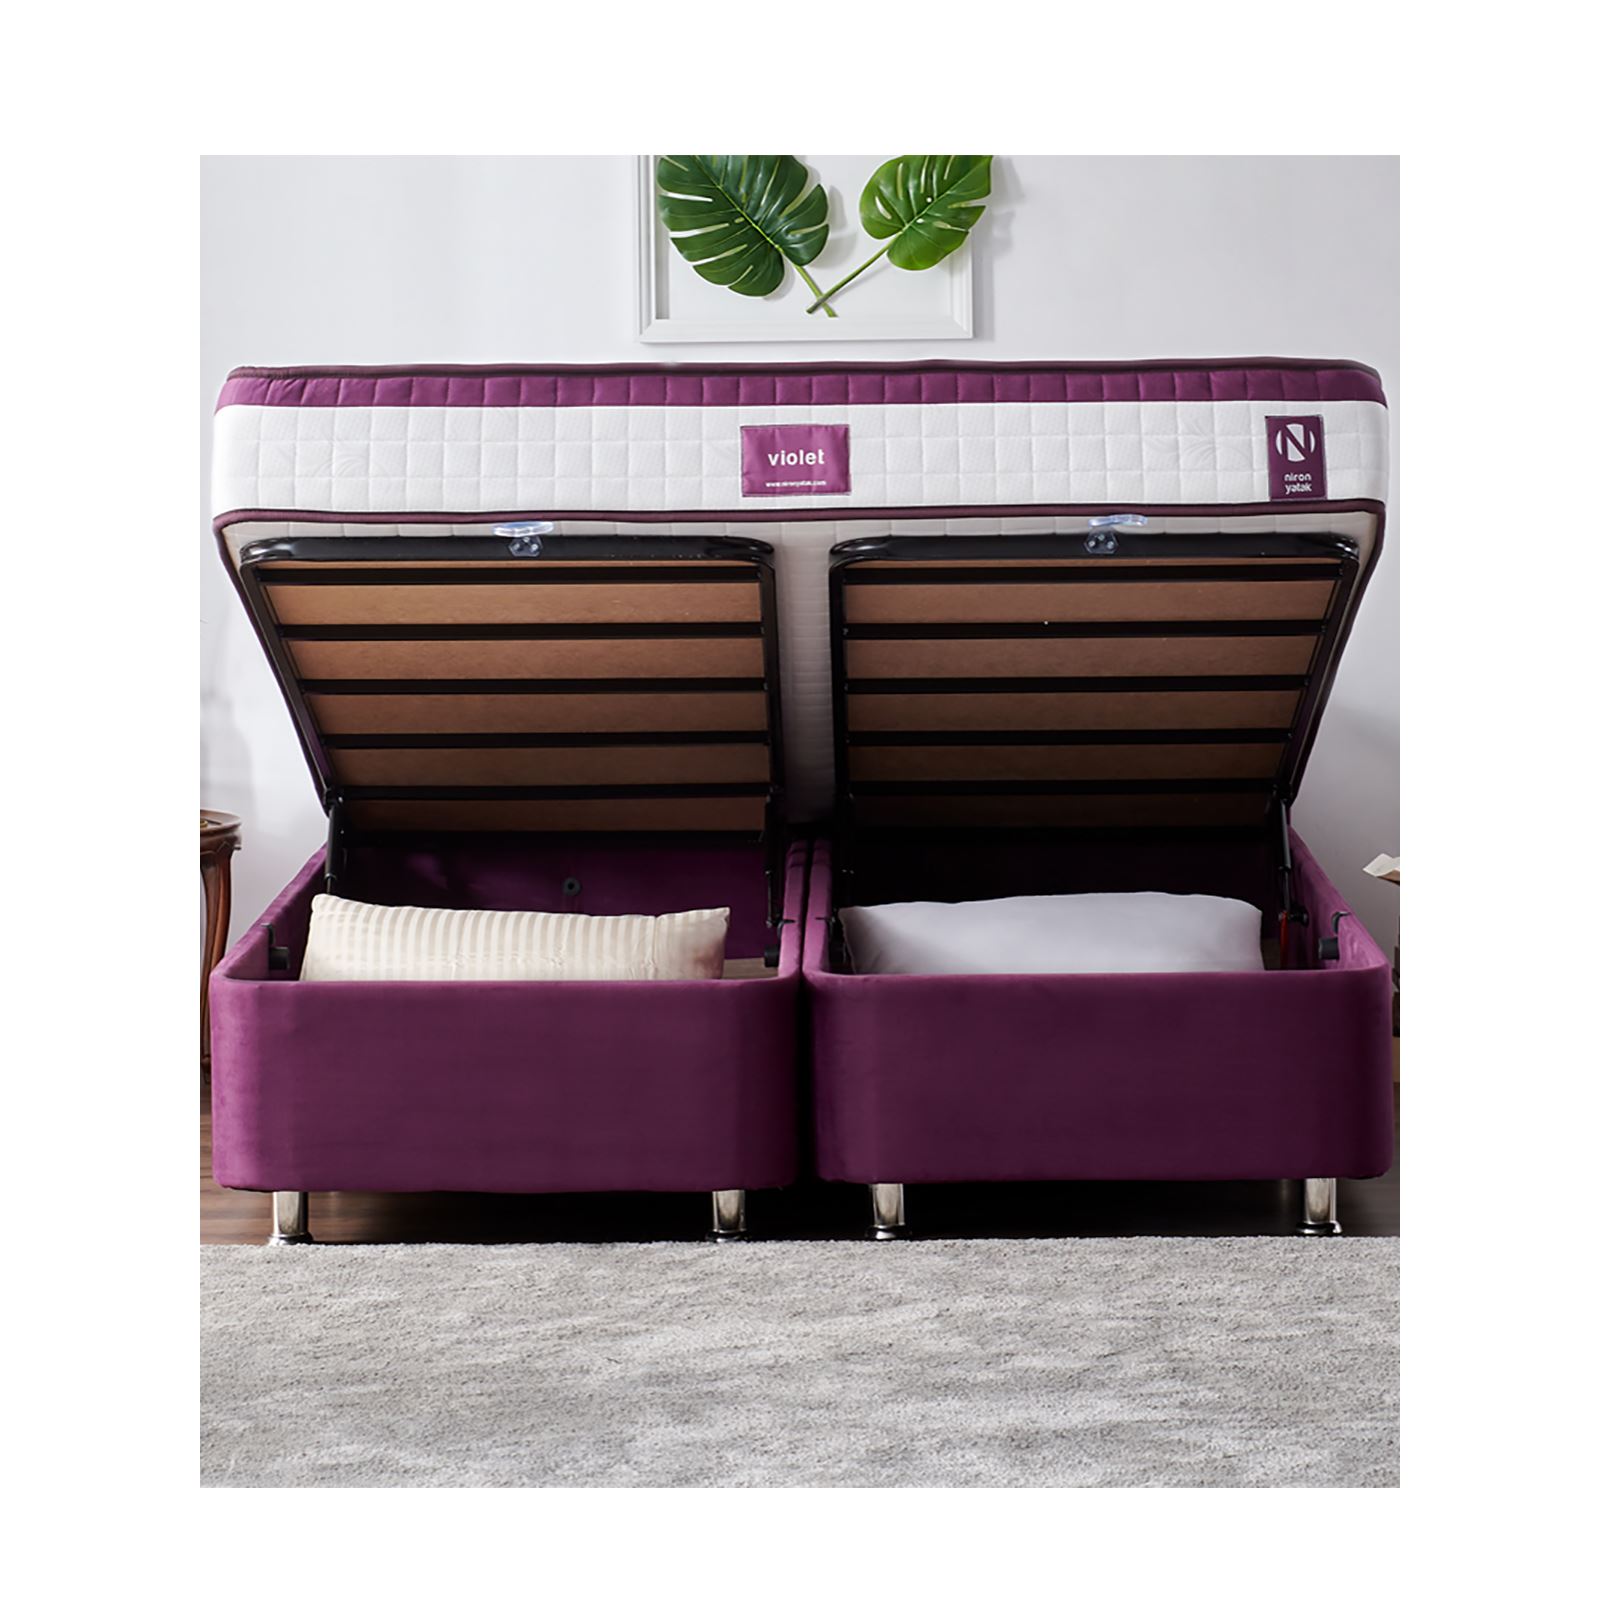 Niron Purple Yatak Seti 160x200 cm Çift Kişilik Yatak Baza Başlık Takımı Orta Sert Yatak Baza ve Başlığı Mor